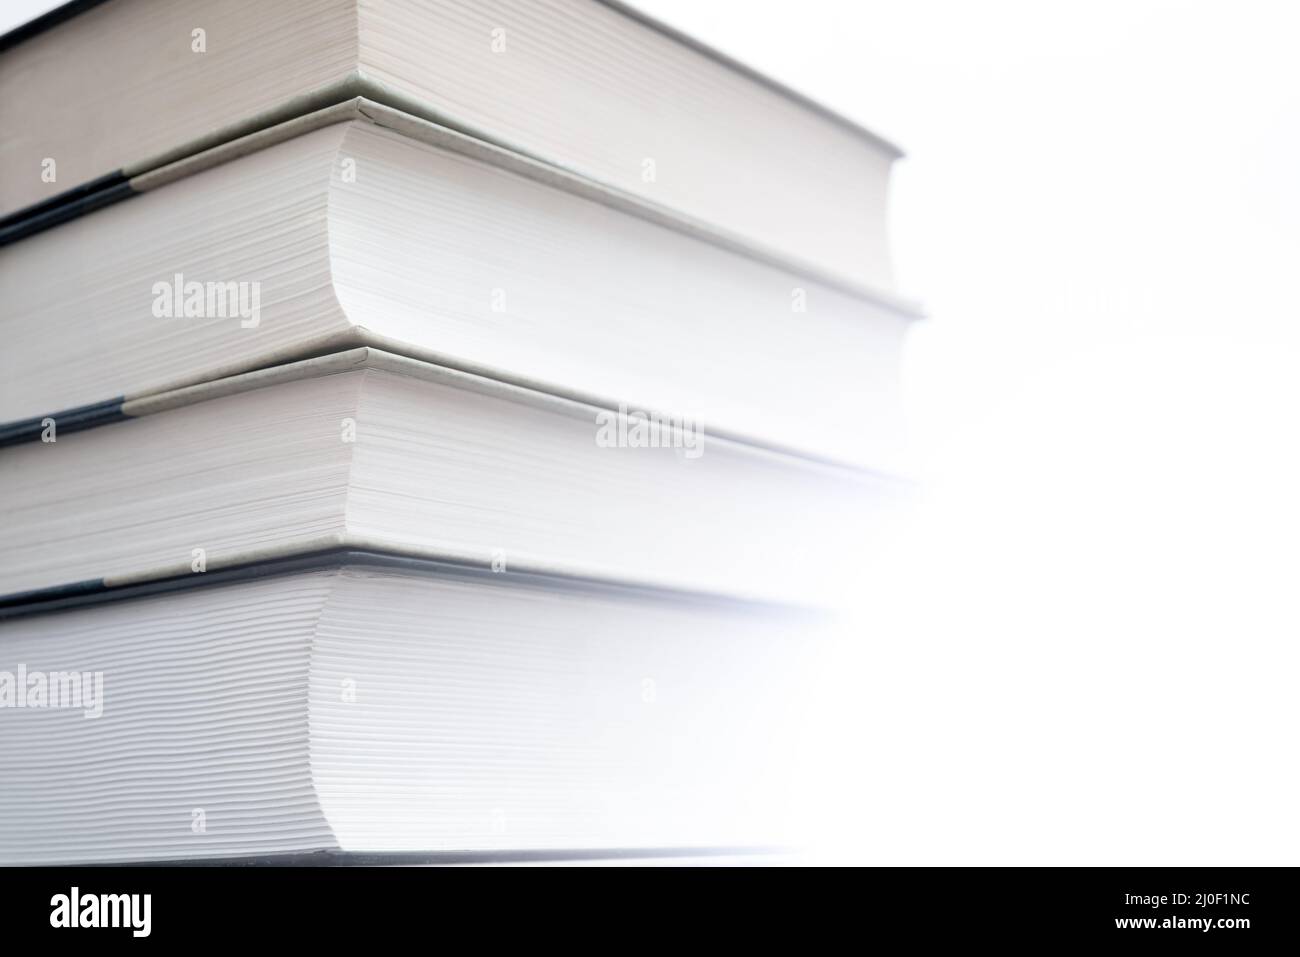 Dickes Papier Bücher sind ein Symbol für Bildung und Weisheit. Ein Stapel Bücher auf dem Tisch. Speicherung und Verbreitung von Informationen. Stockfoto